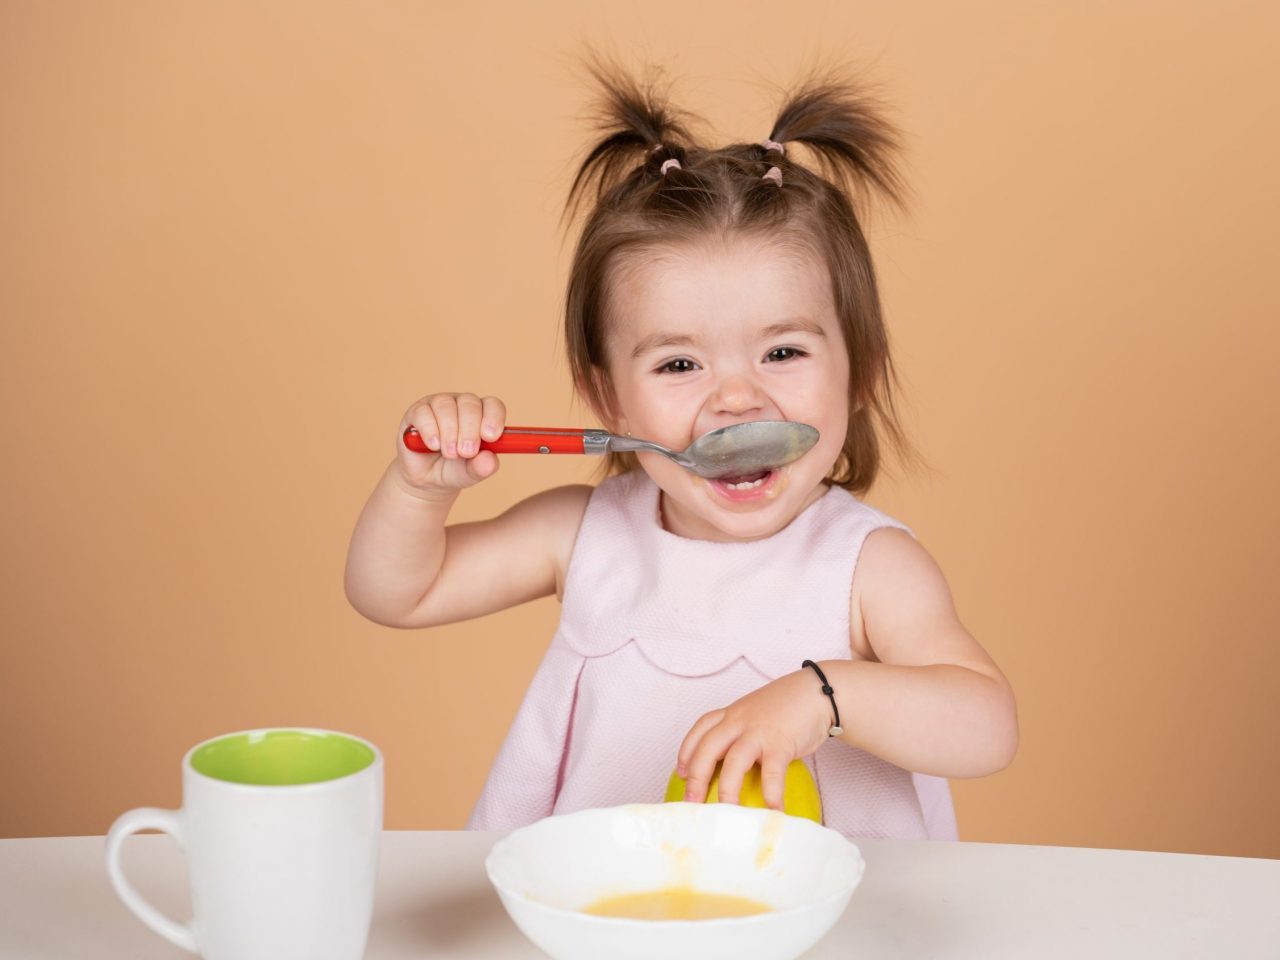 Overzicht gezonde voeding kinderen 1 tot 3 jaar